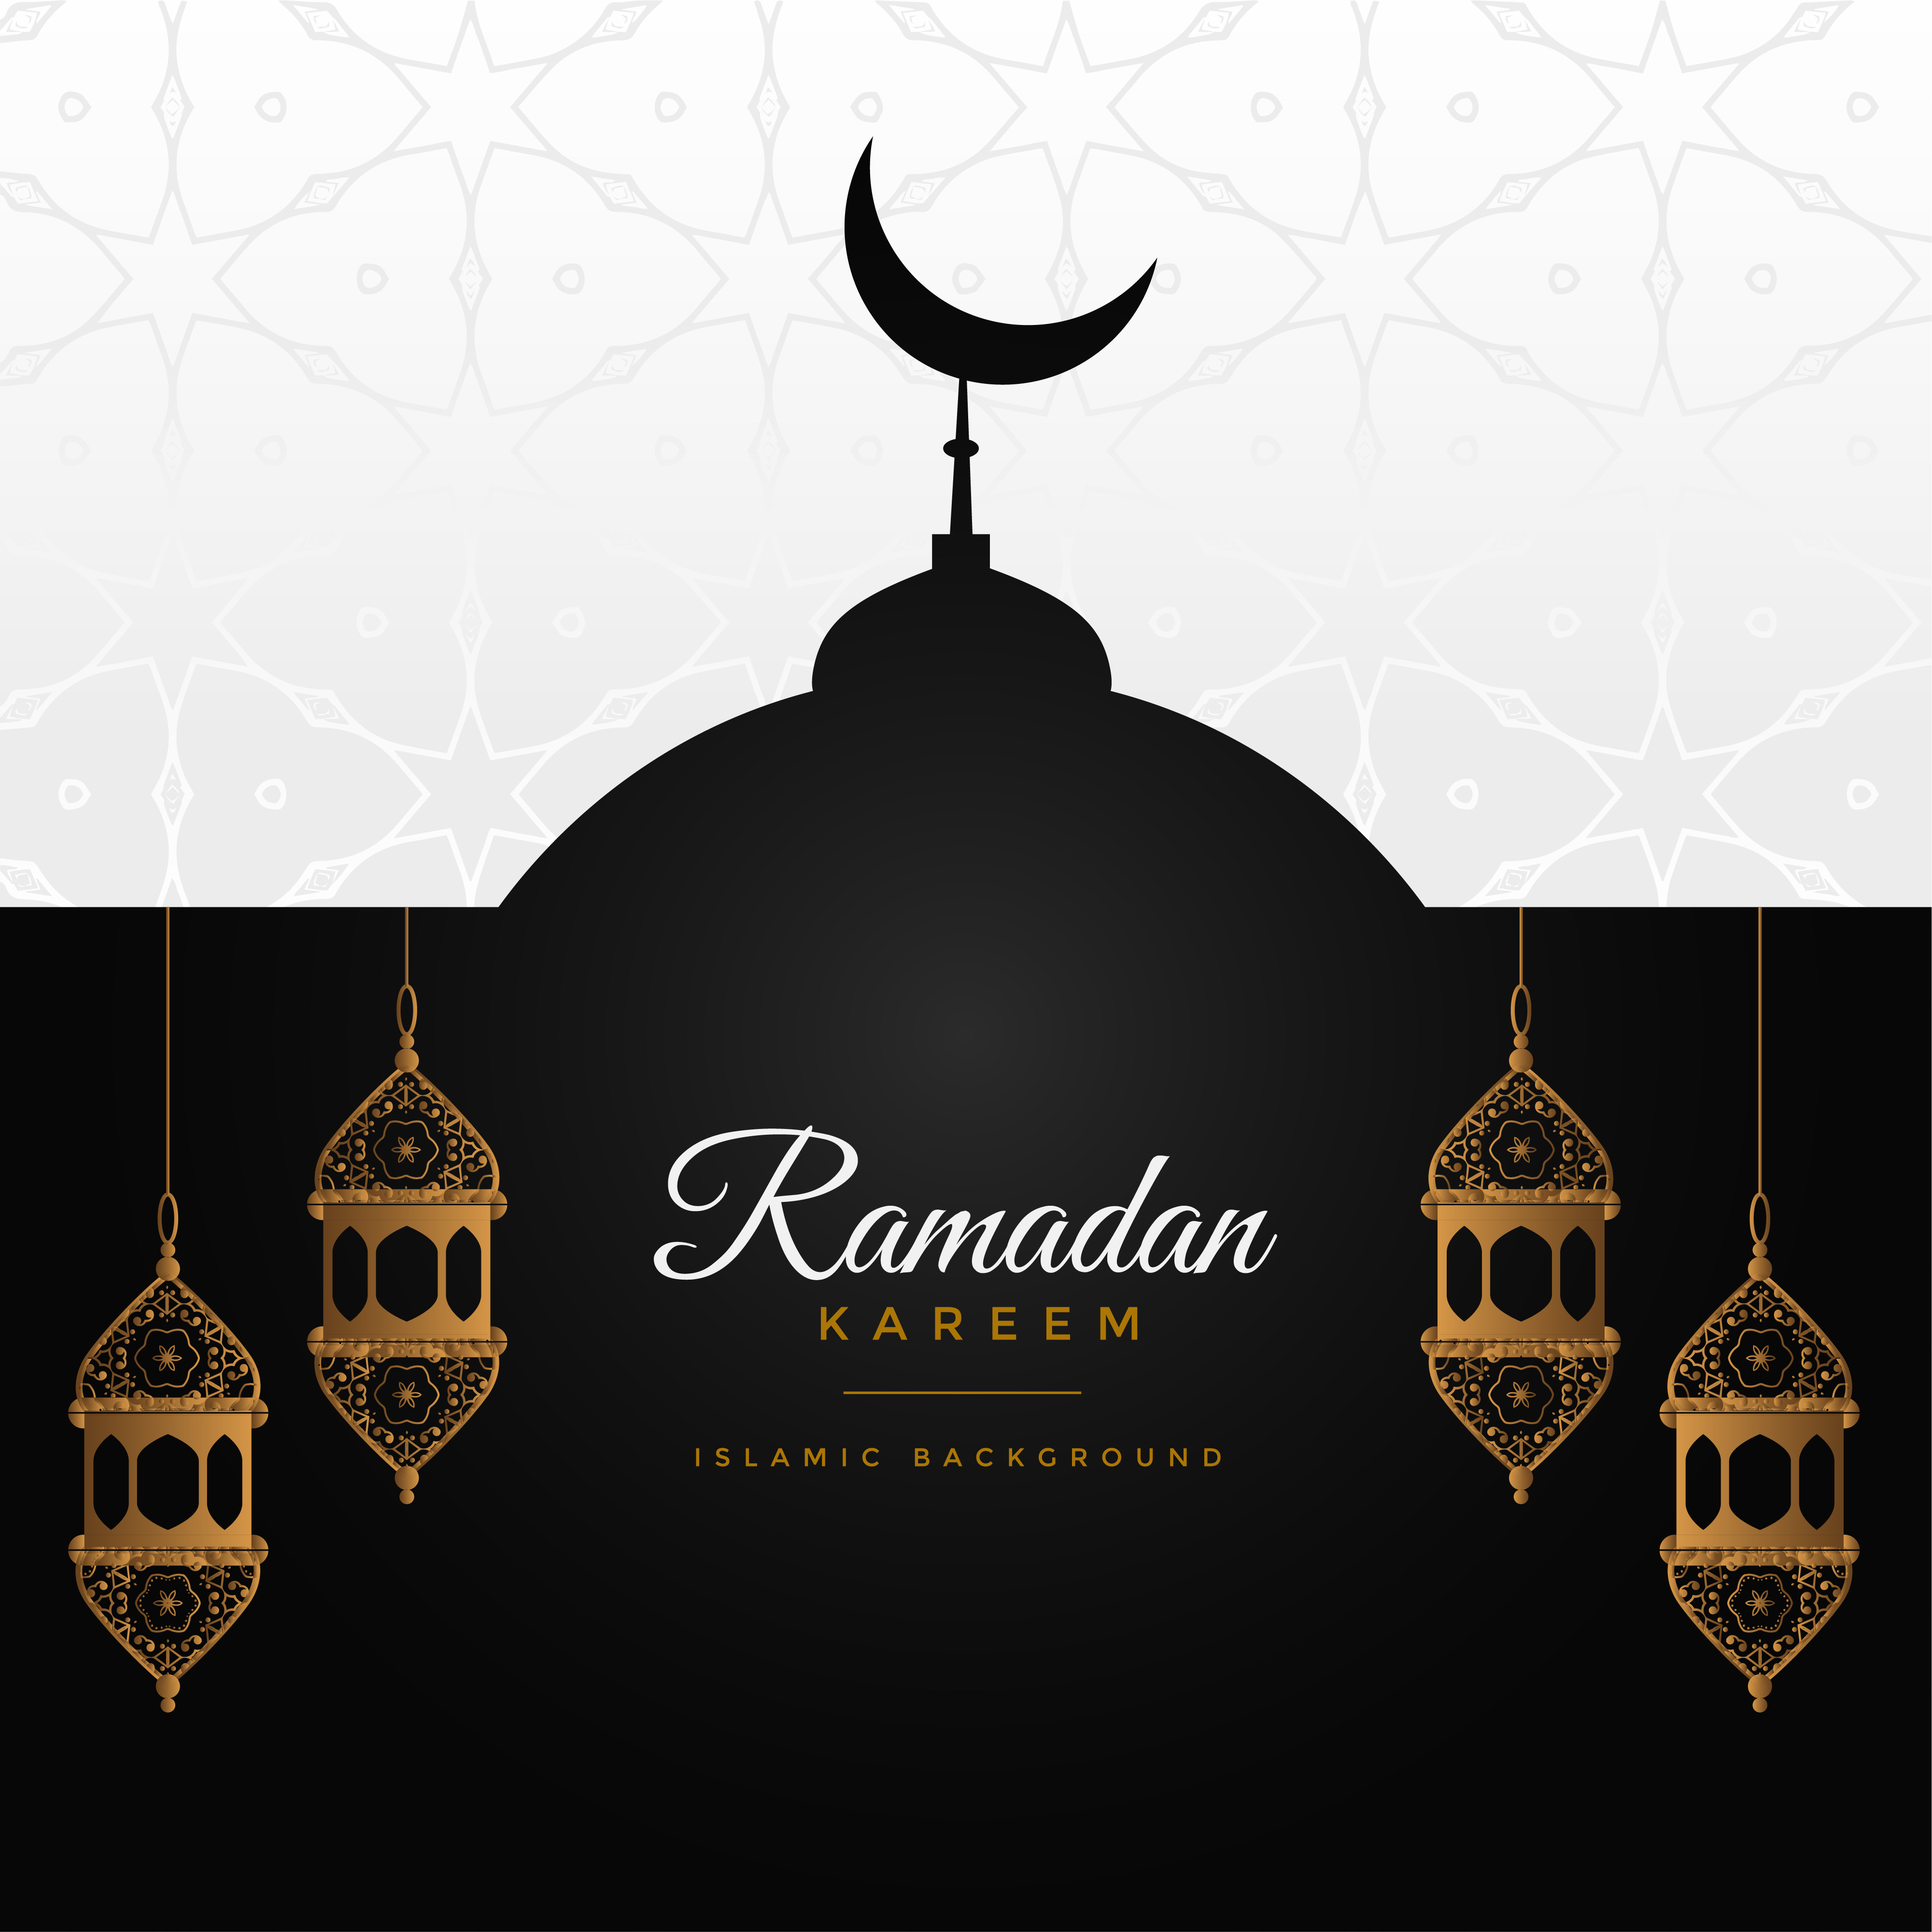 Ramadan kareem awesome design background - Download Free 